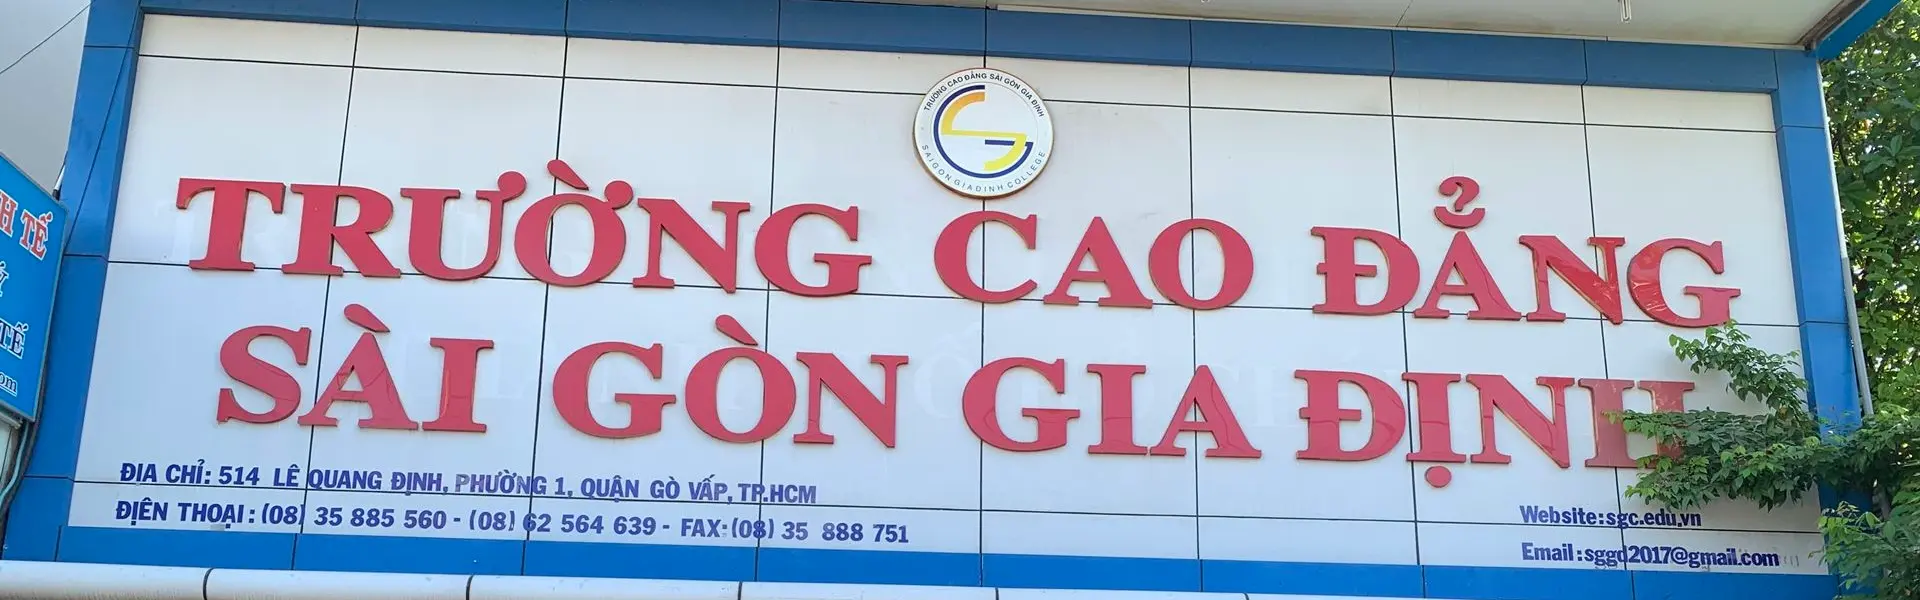 Cao đẳng Sài Gòn Gia Định